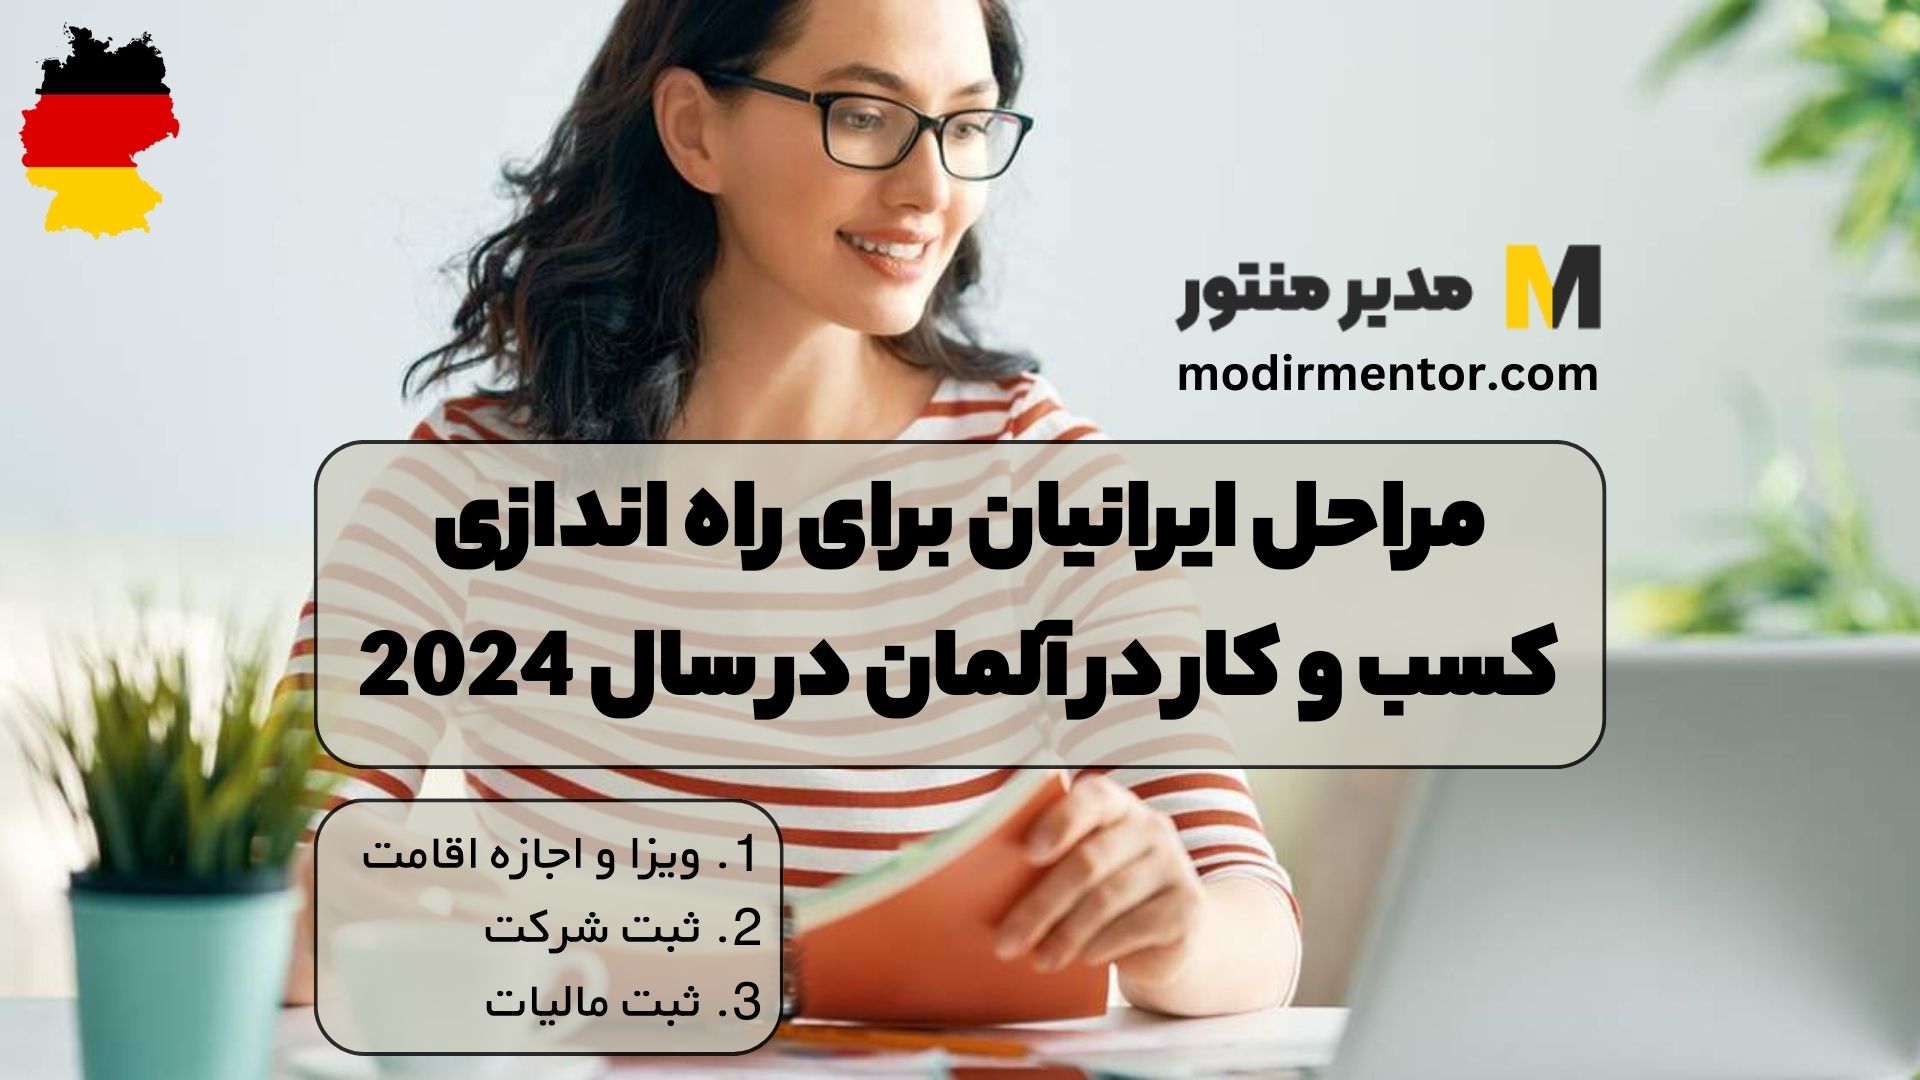 مراحل ایرانیان برای راه اندازی کسب و کار در آلمان در سال 2024